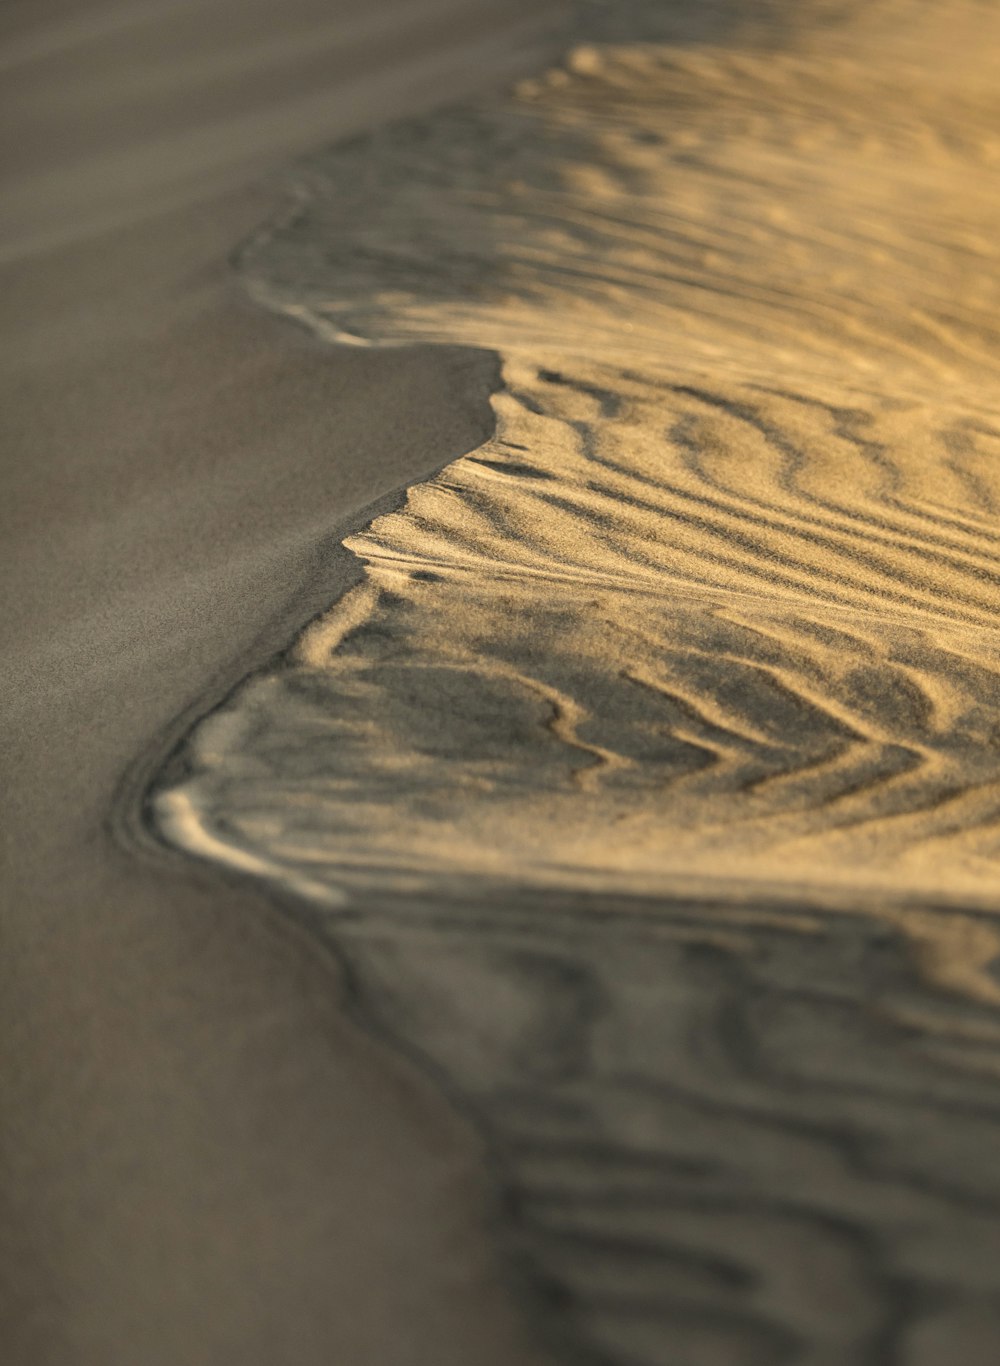 Eine Wüstenlandschaft mit Sand